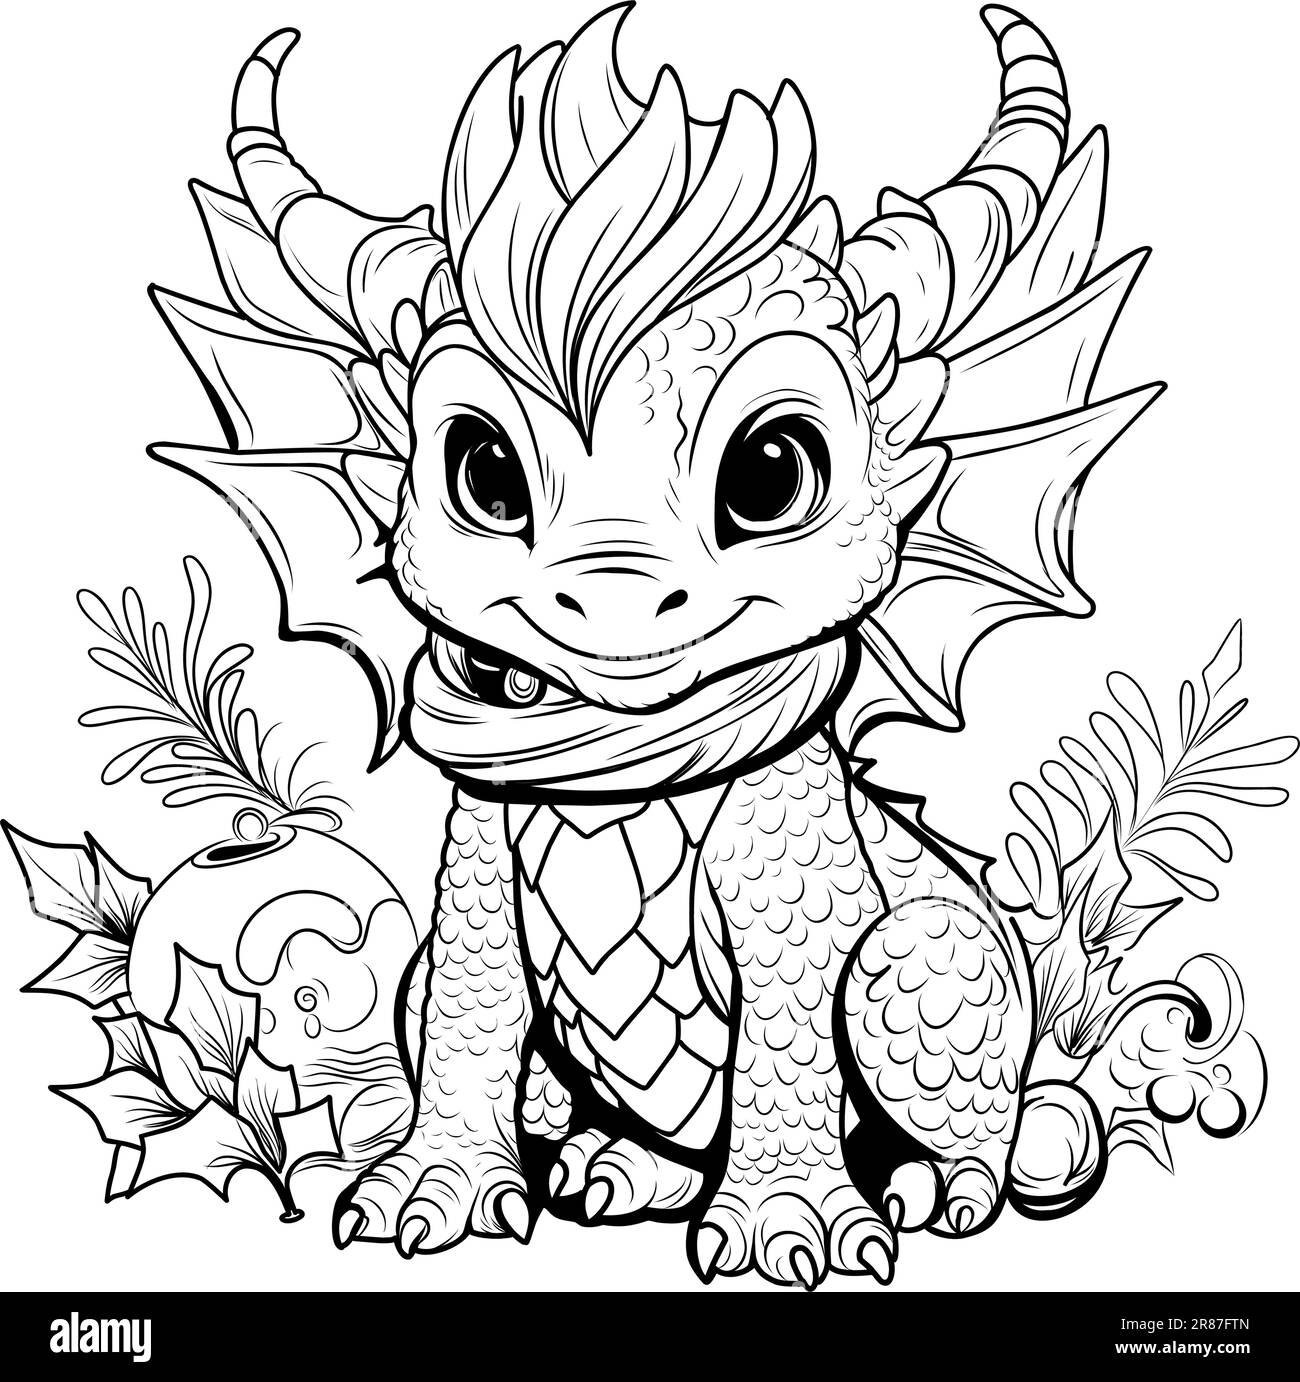 https://c8.alamy.com/compes/2r87ftn/libro-de-colorear-dragon-pagina-para-colorear-ilustracion-de-linea-simple-de-pequeno-dragon-lindo-en-estilo-de-dibujos-animados-simbolo-de-2024-2r87ftn.jpg